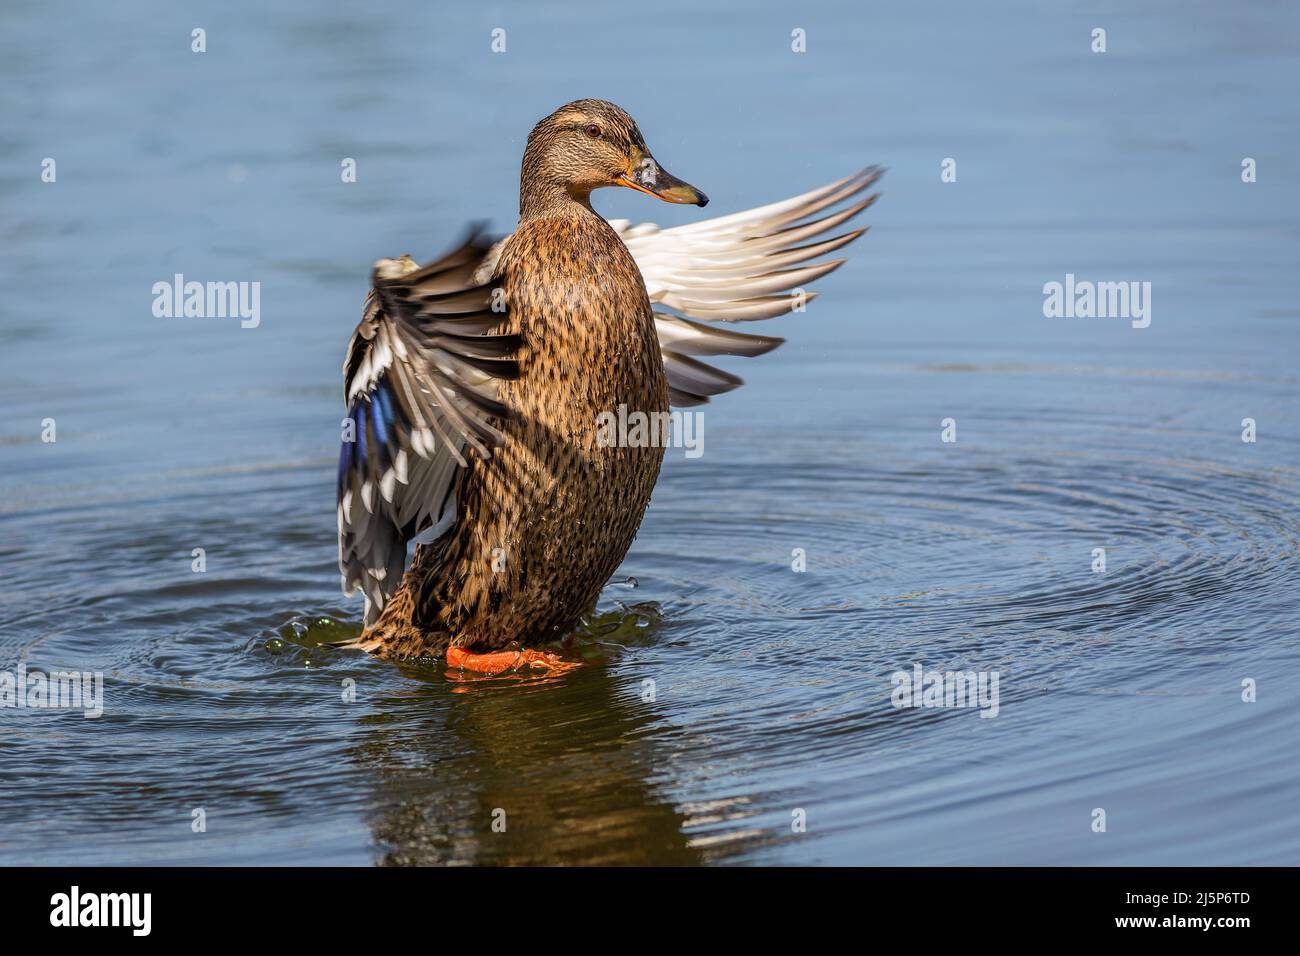 Un pato mallard hembra con patas naranjas de pie en agua azul agitando sus alas. Soleado día de primavera junto a un lago. Foto de stock